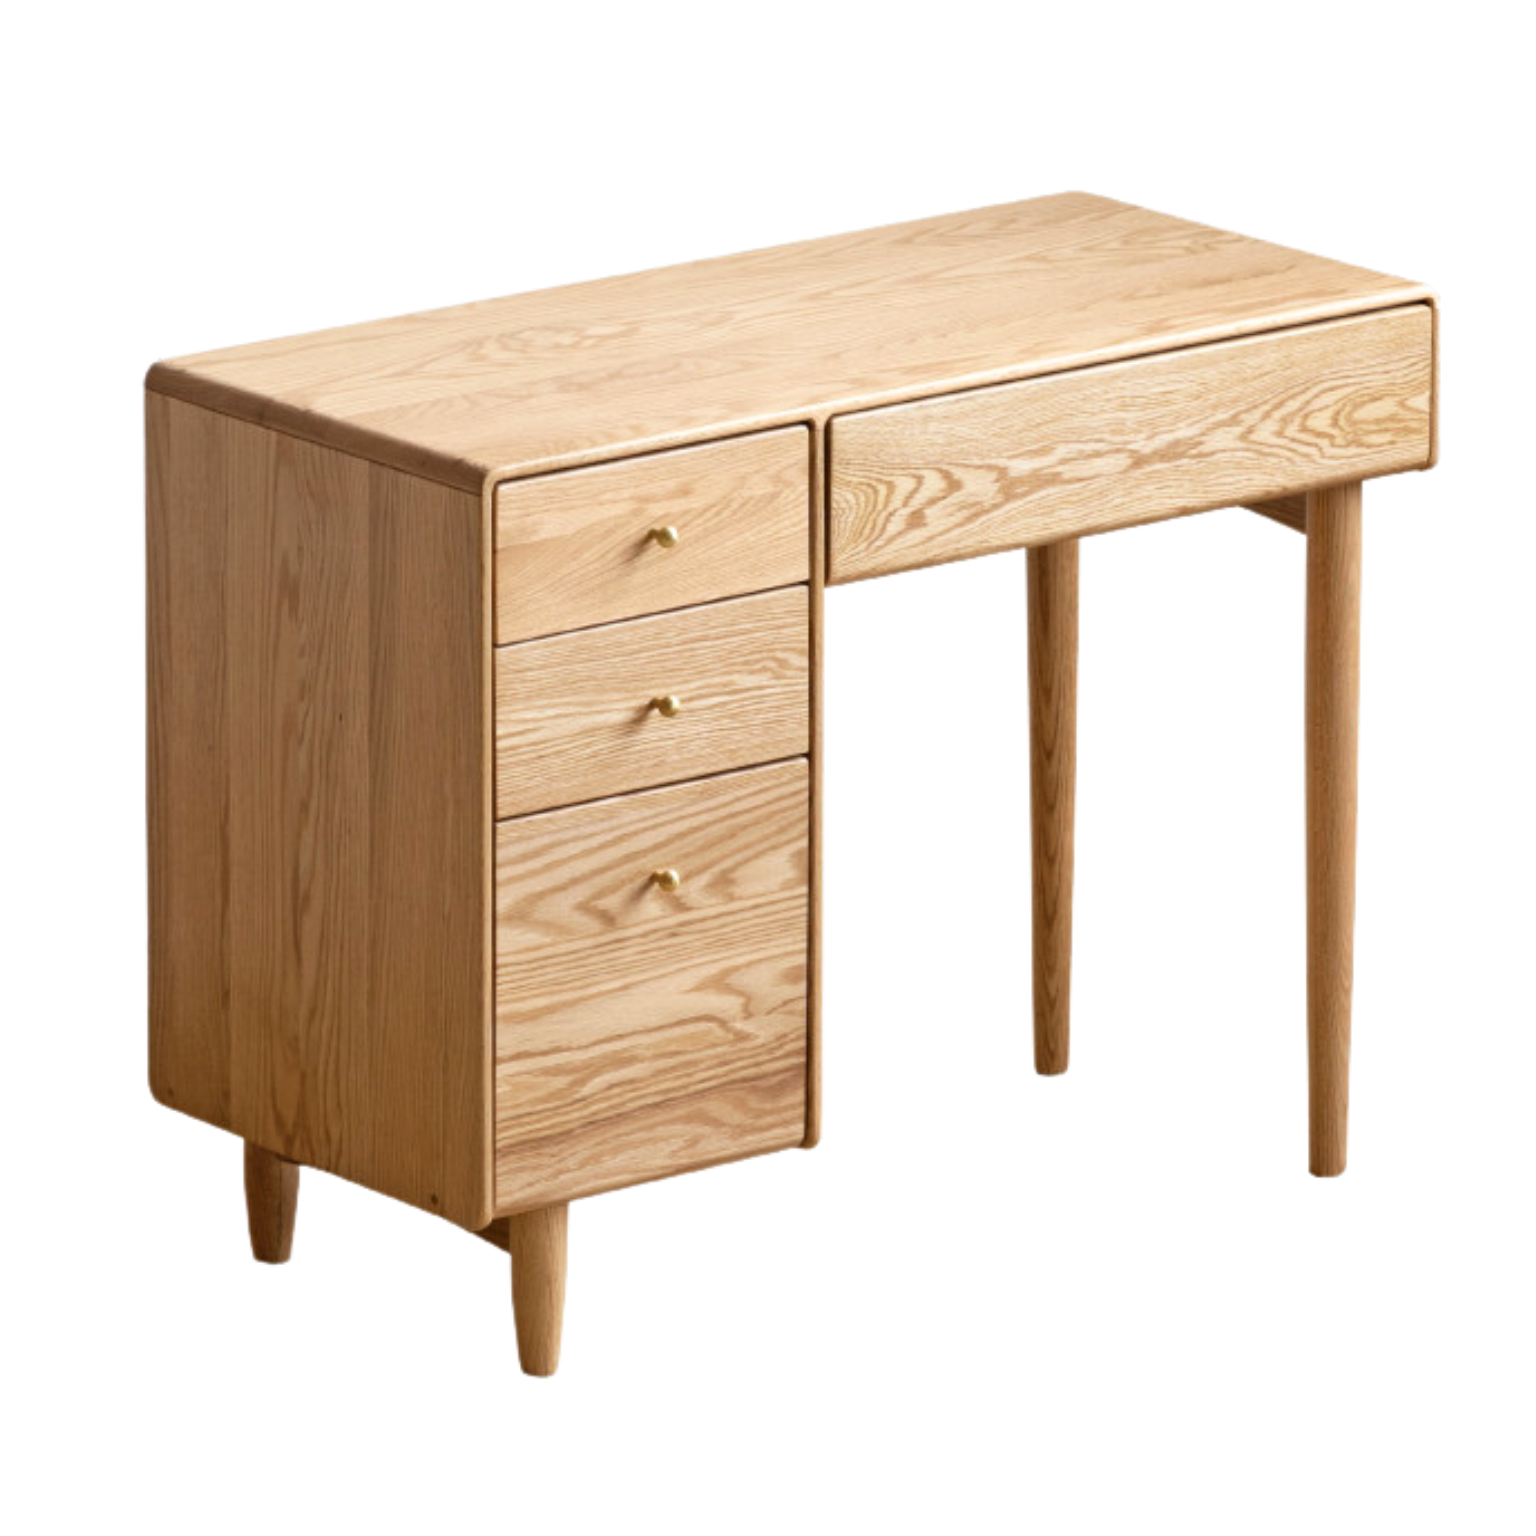 Oak solid wood dresser modern atmosphere with lights -